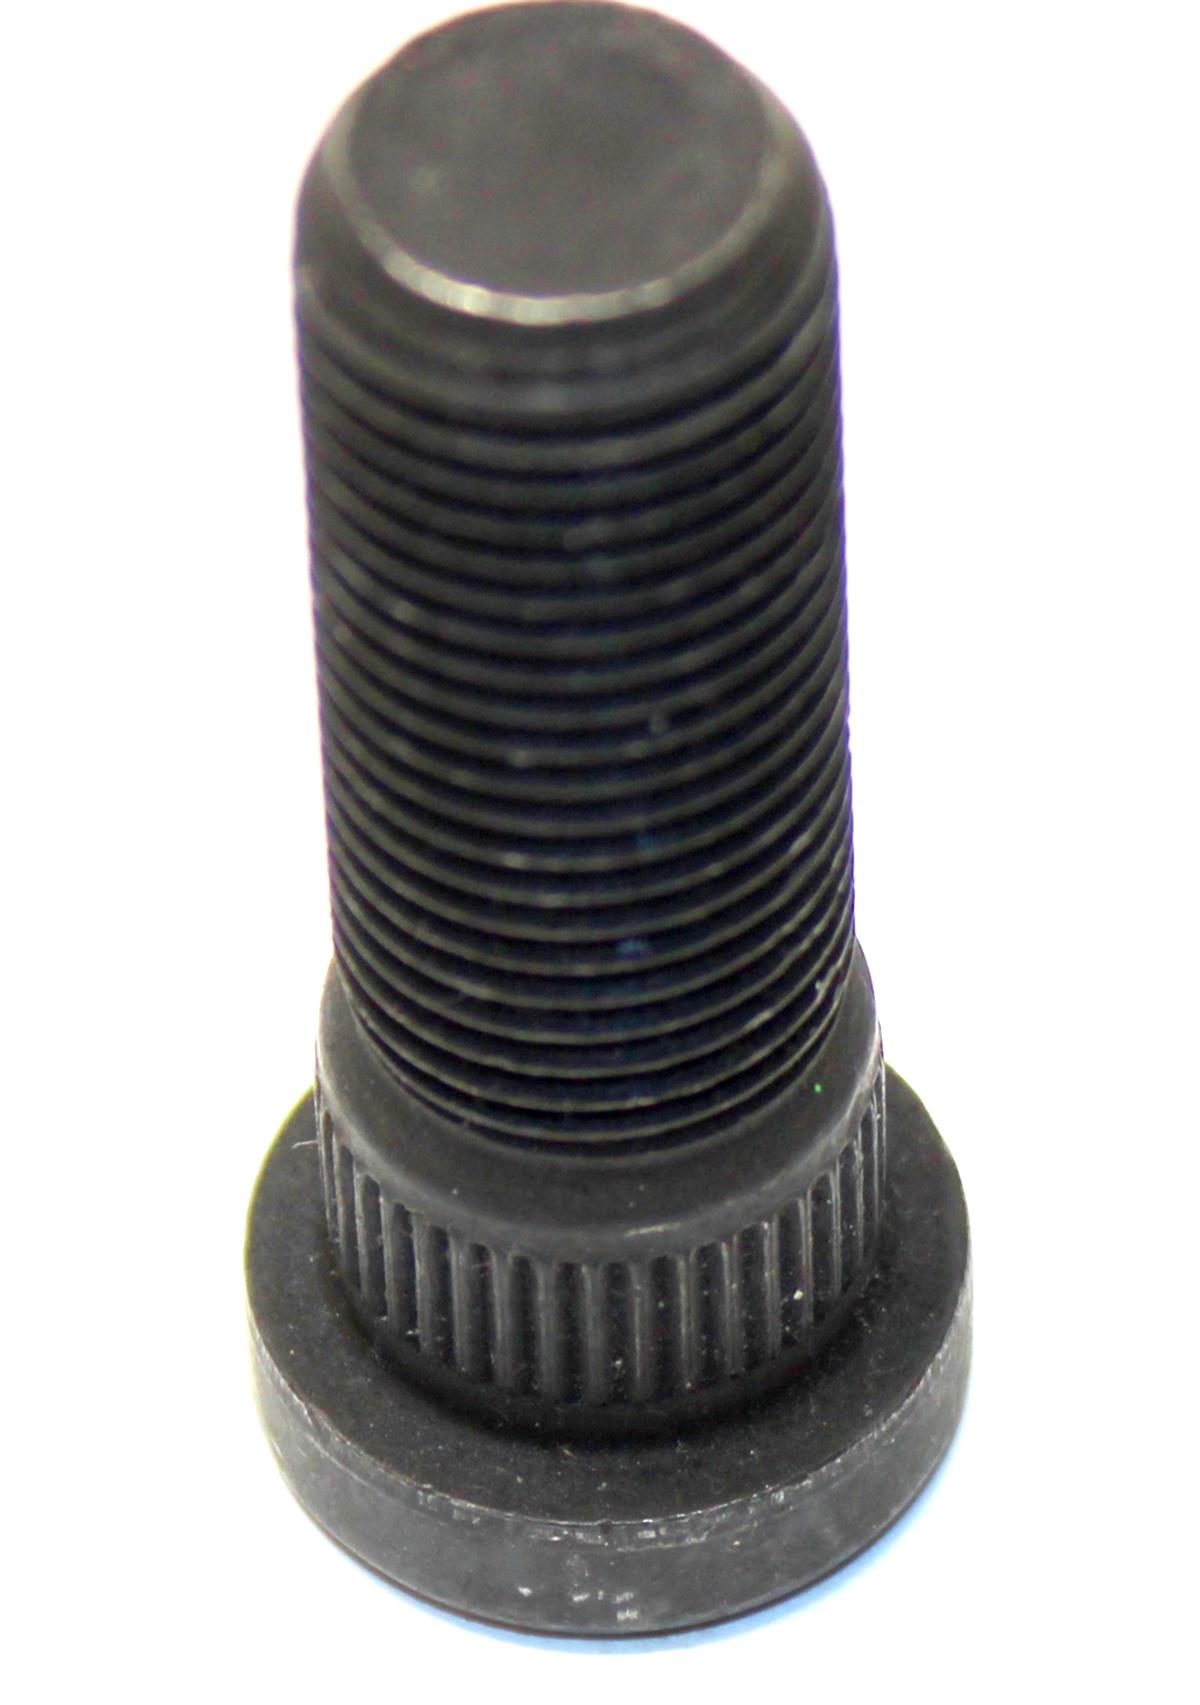 HM-3547 | HM-3547 9l6-18 X 1.50 Self Locking Stud Front Knuckle Geared Hub  (17).JPG